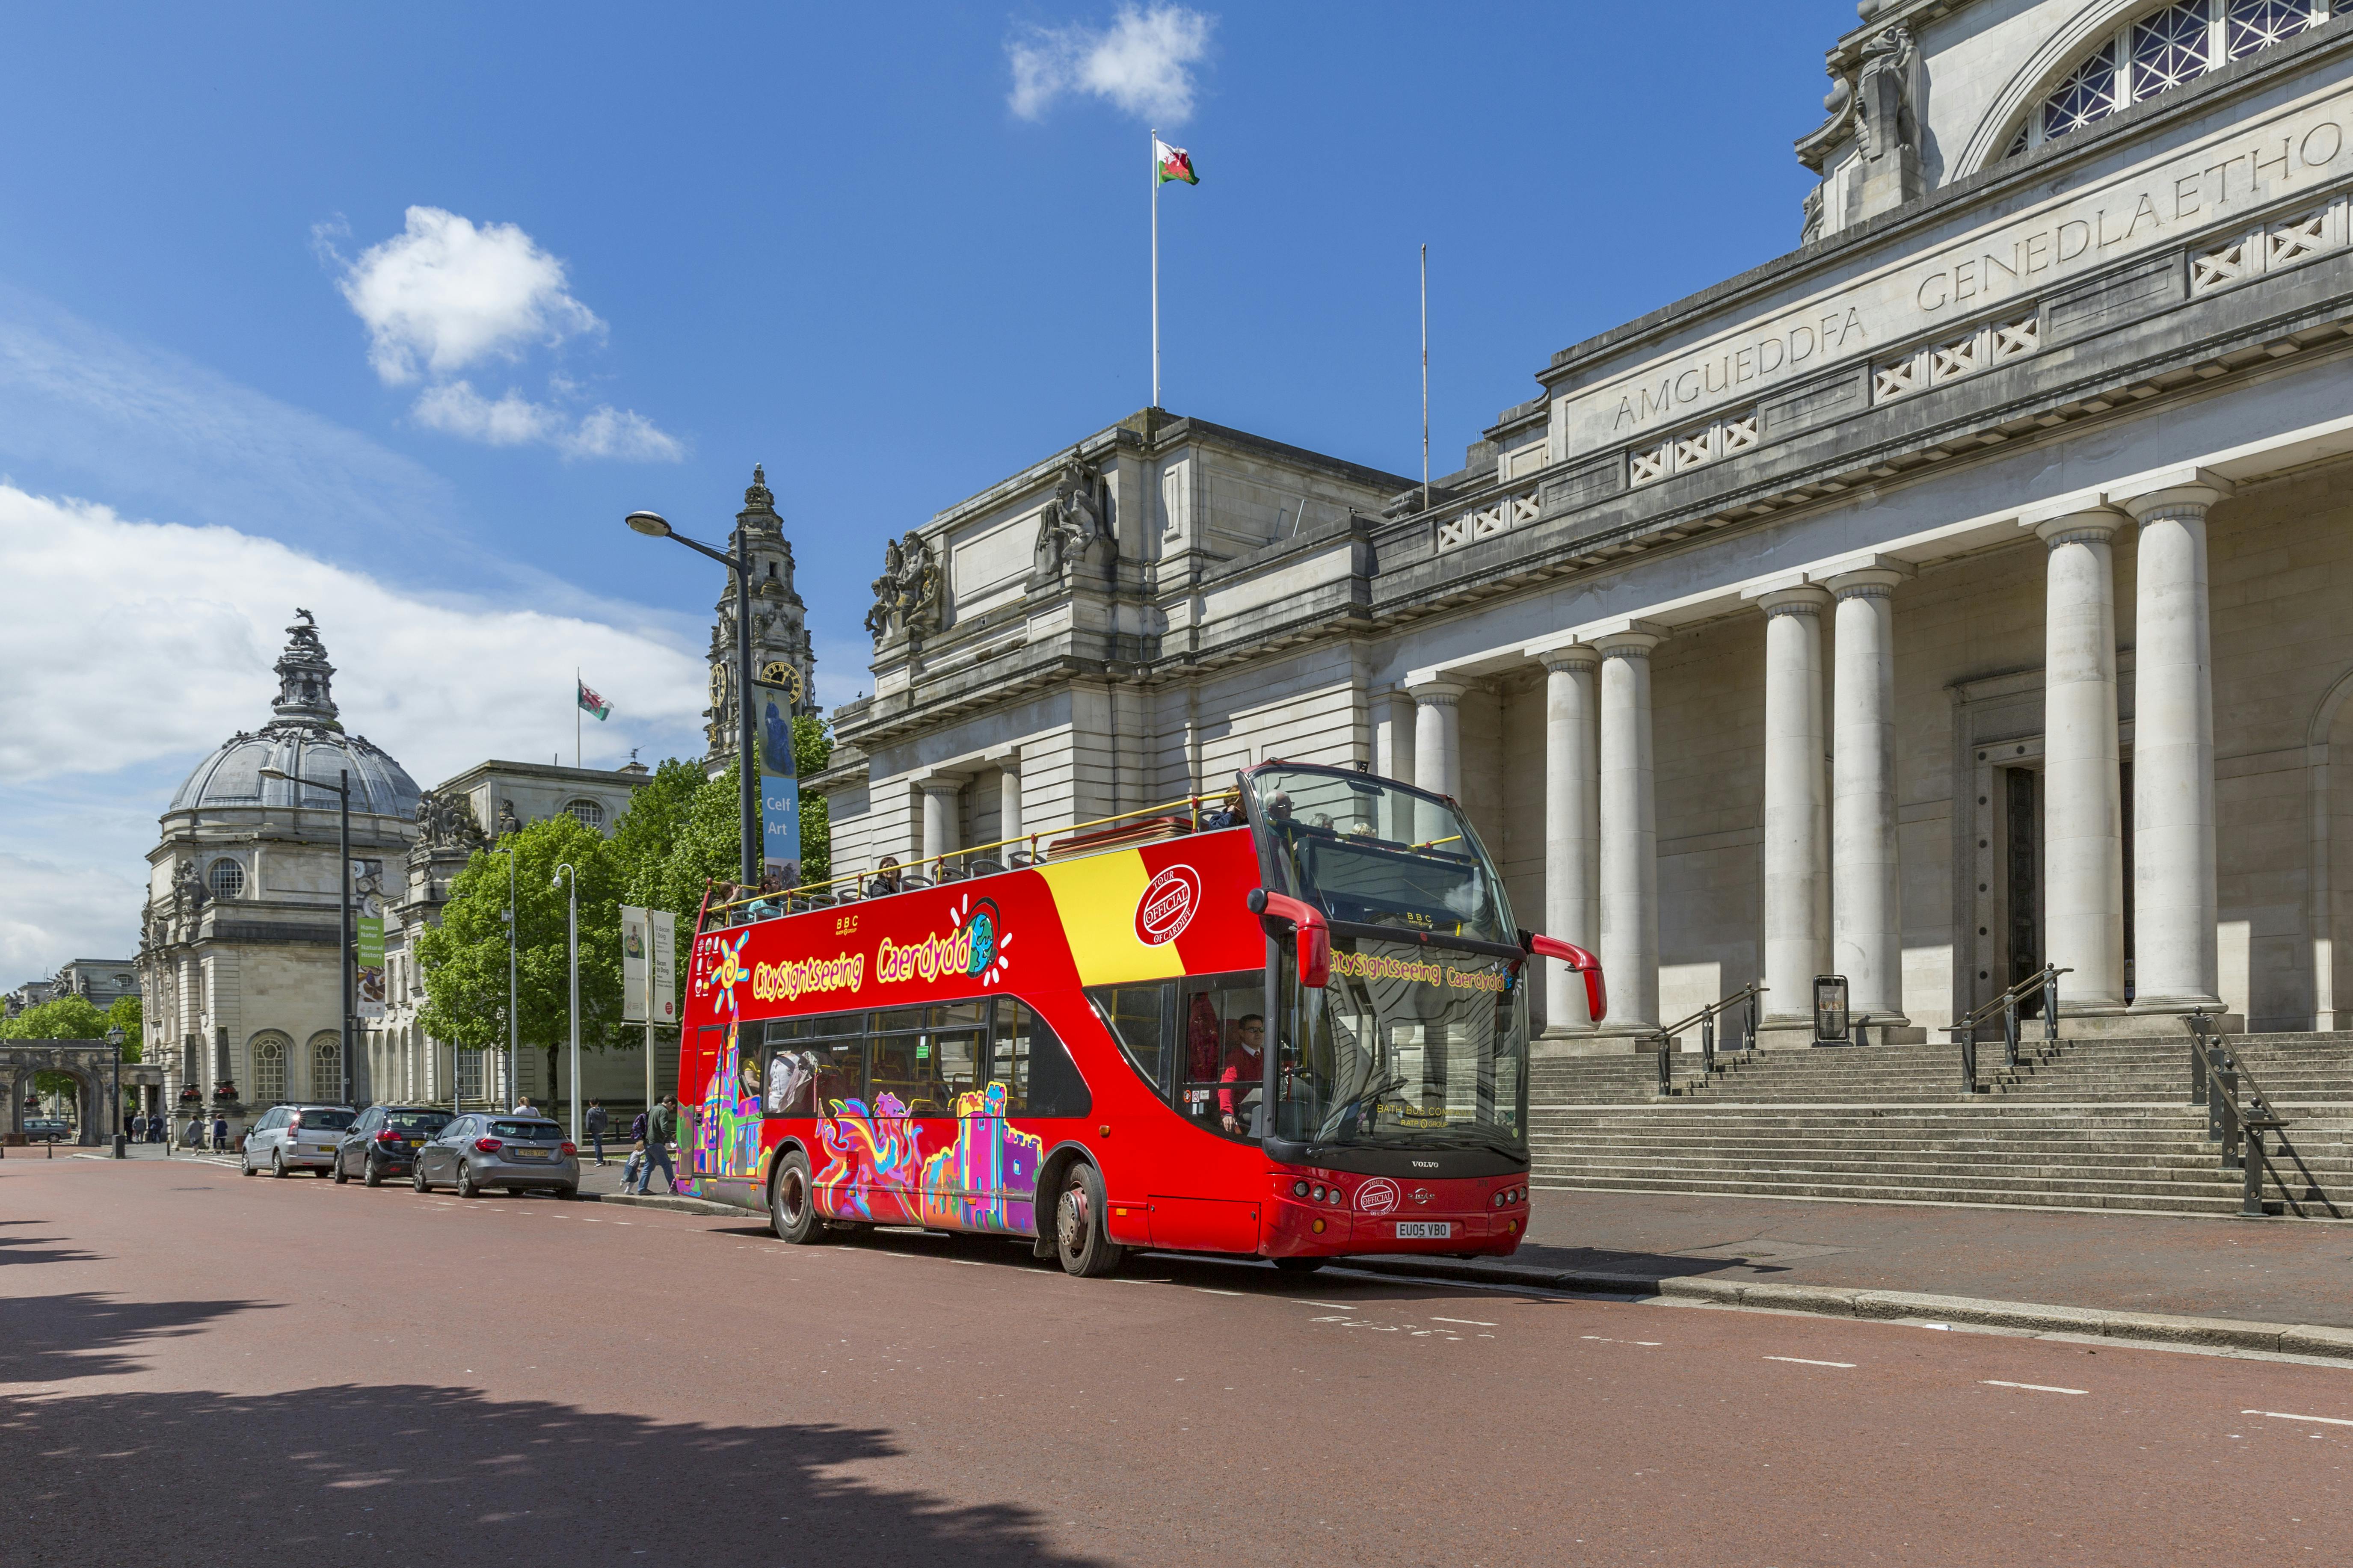 City Sightseeing en autobús turístico por Cardiff